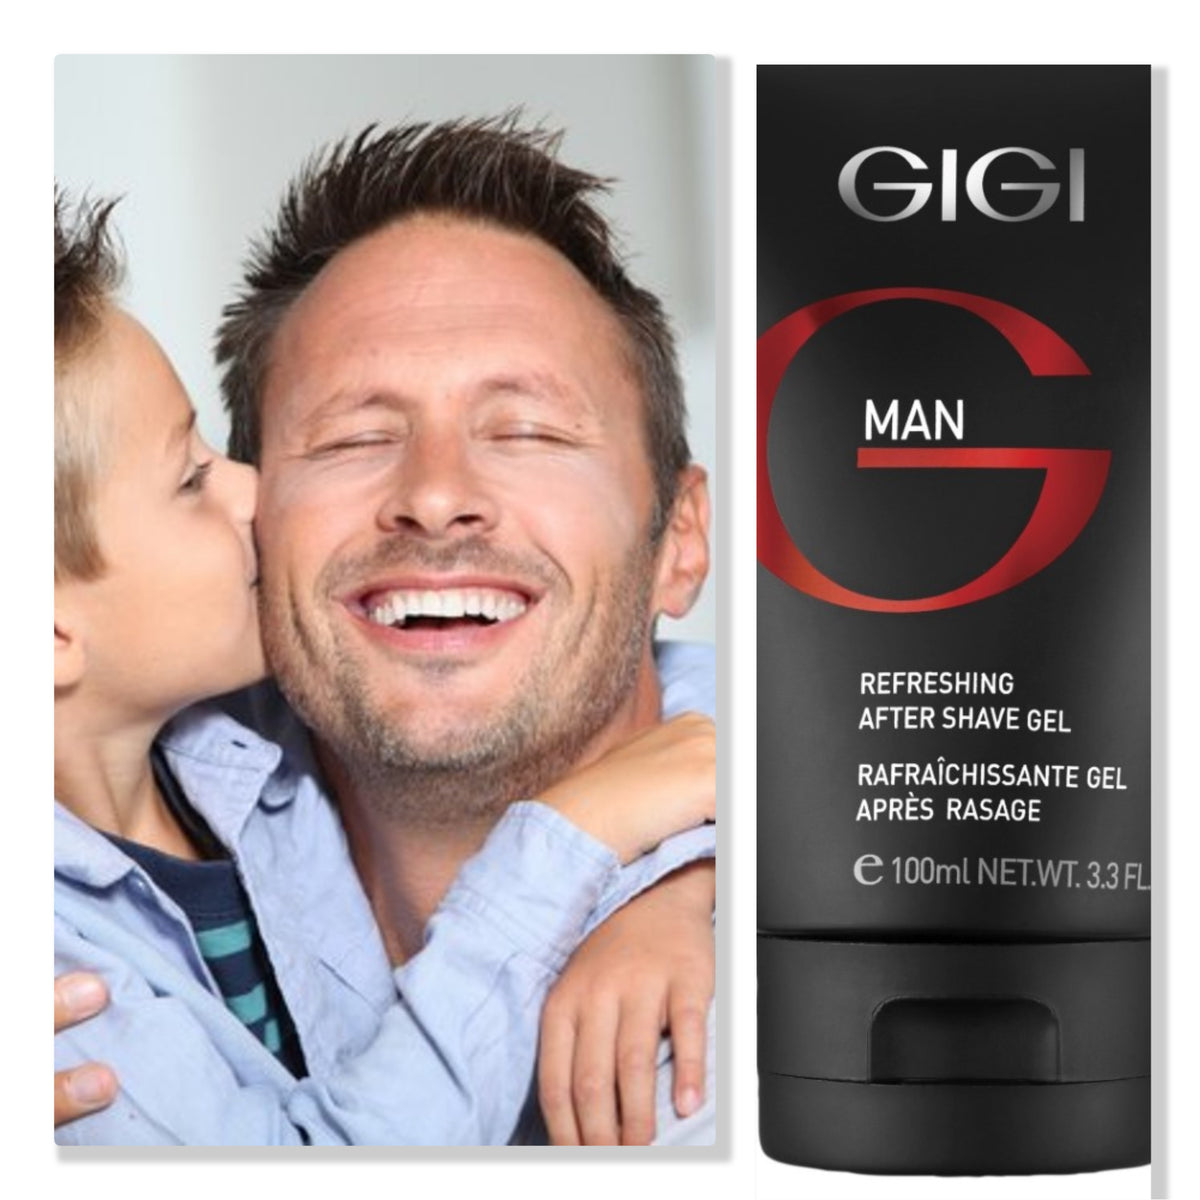 GIGI Man Aftershave